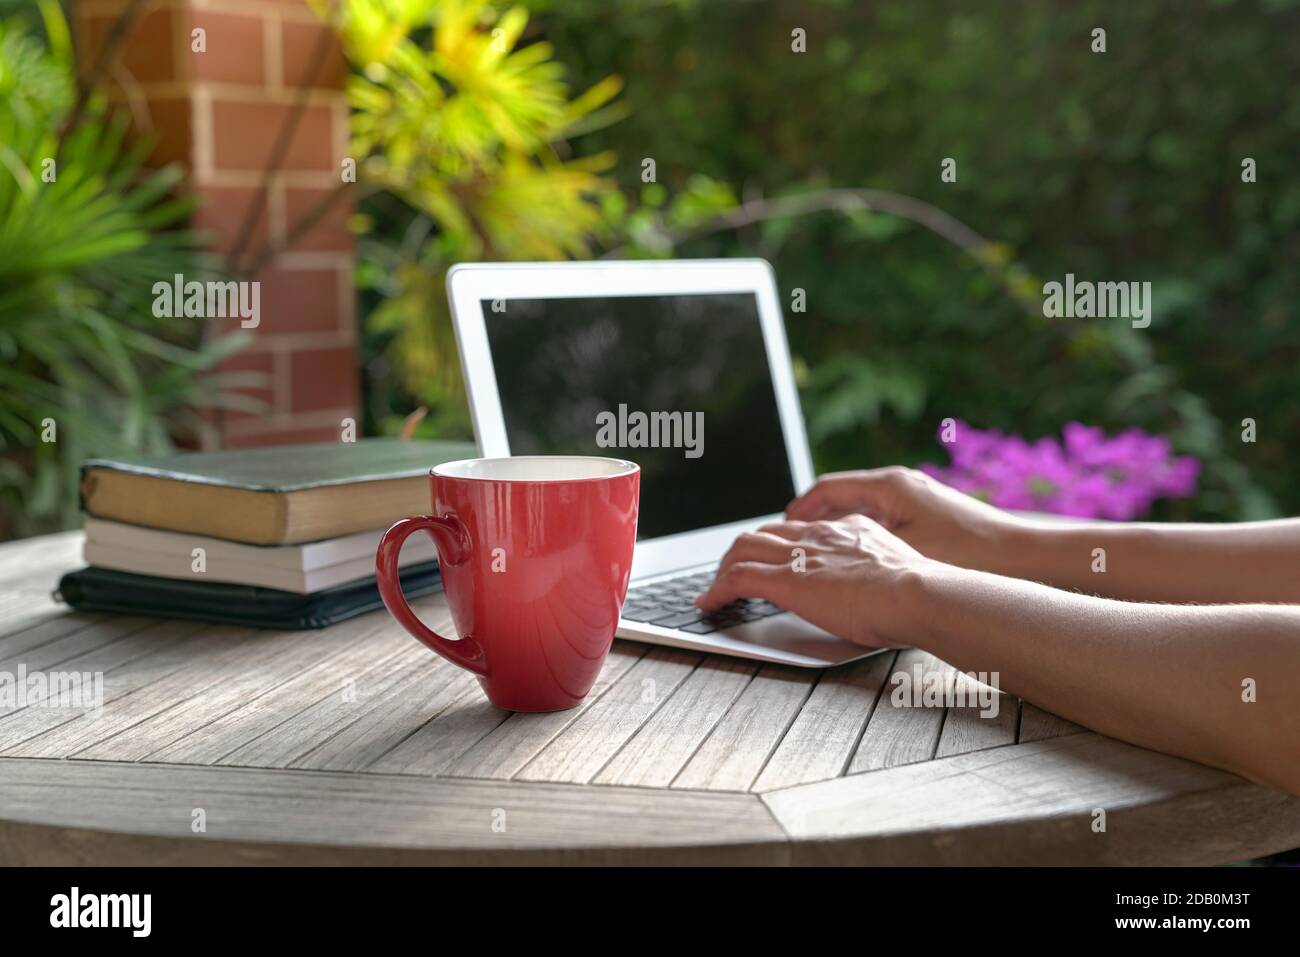 Femme dactylographiant sur ordinateur portable avec des livres sur table, Focus sur la coupe rouge. Concept d'étude à domicile. Banque D'Images